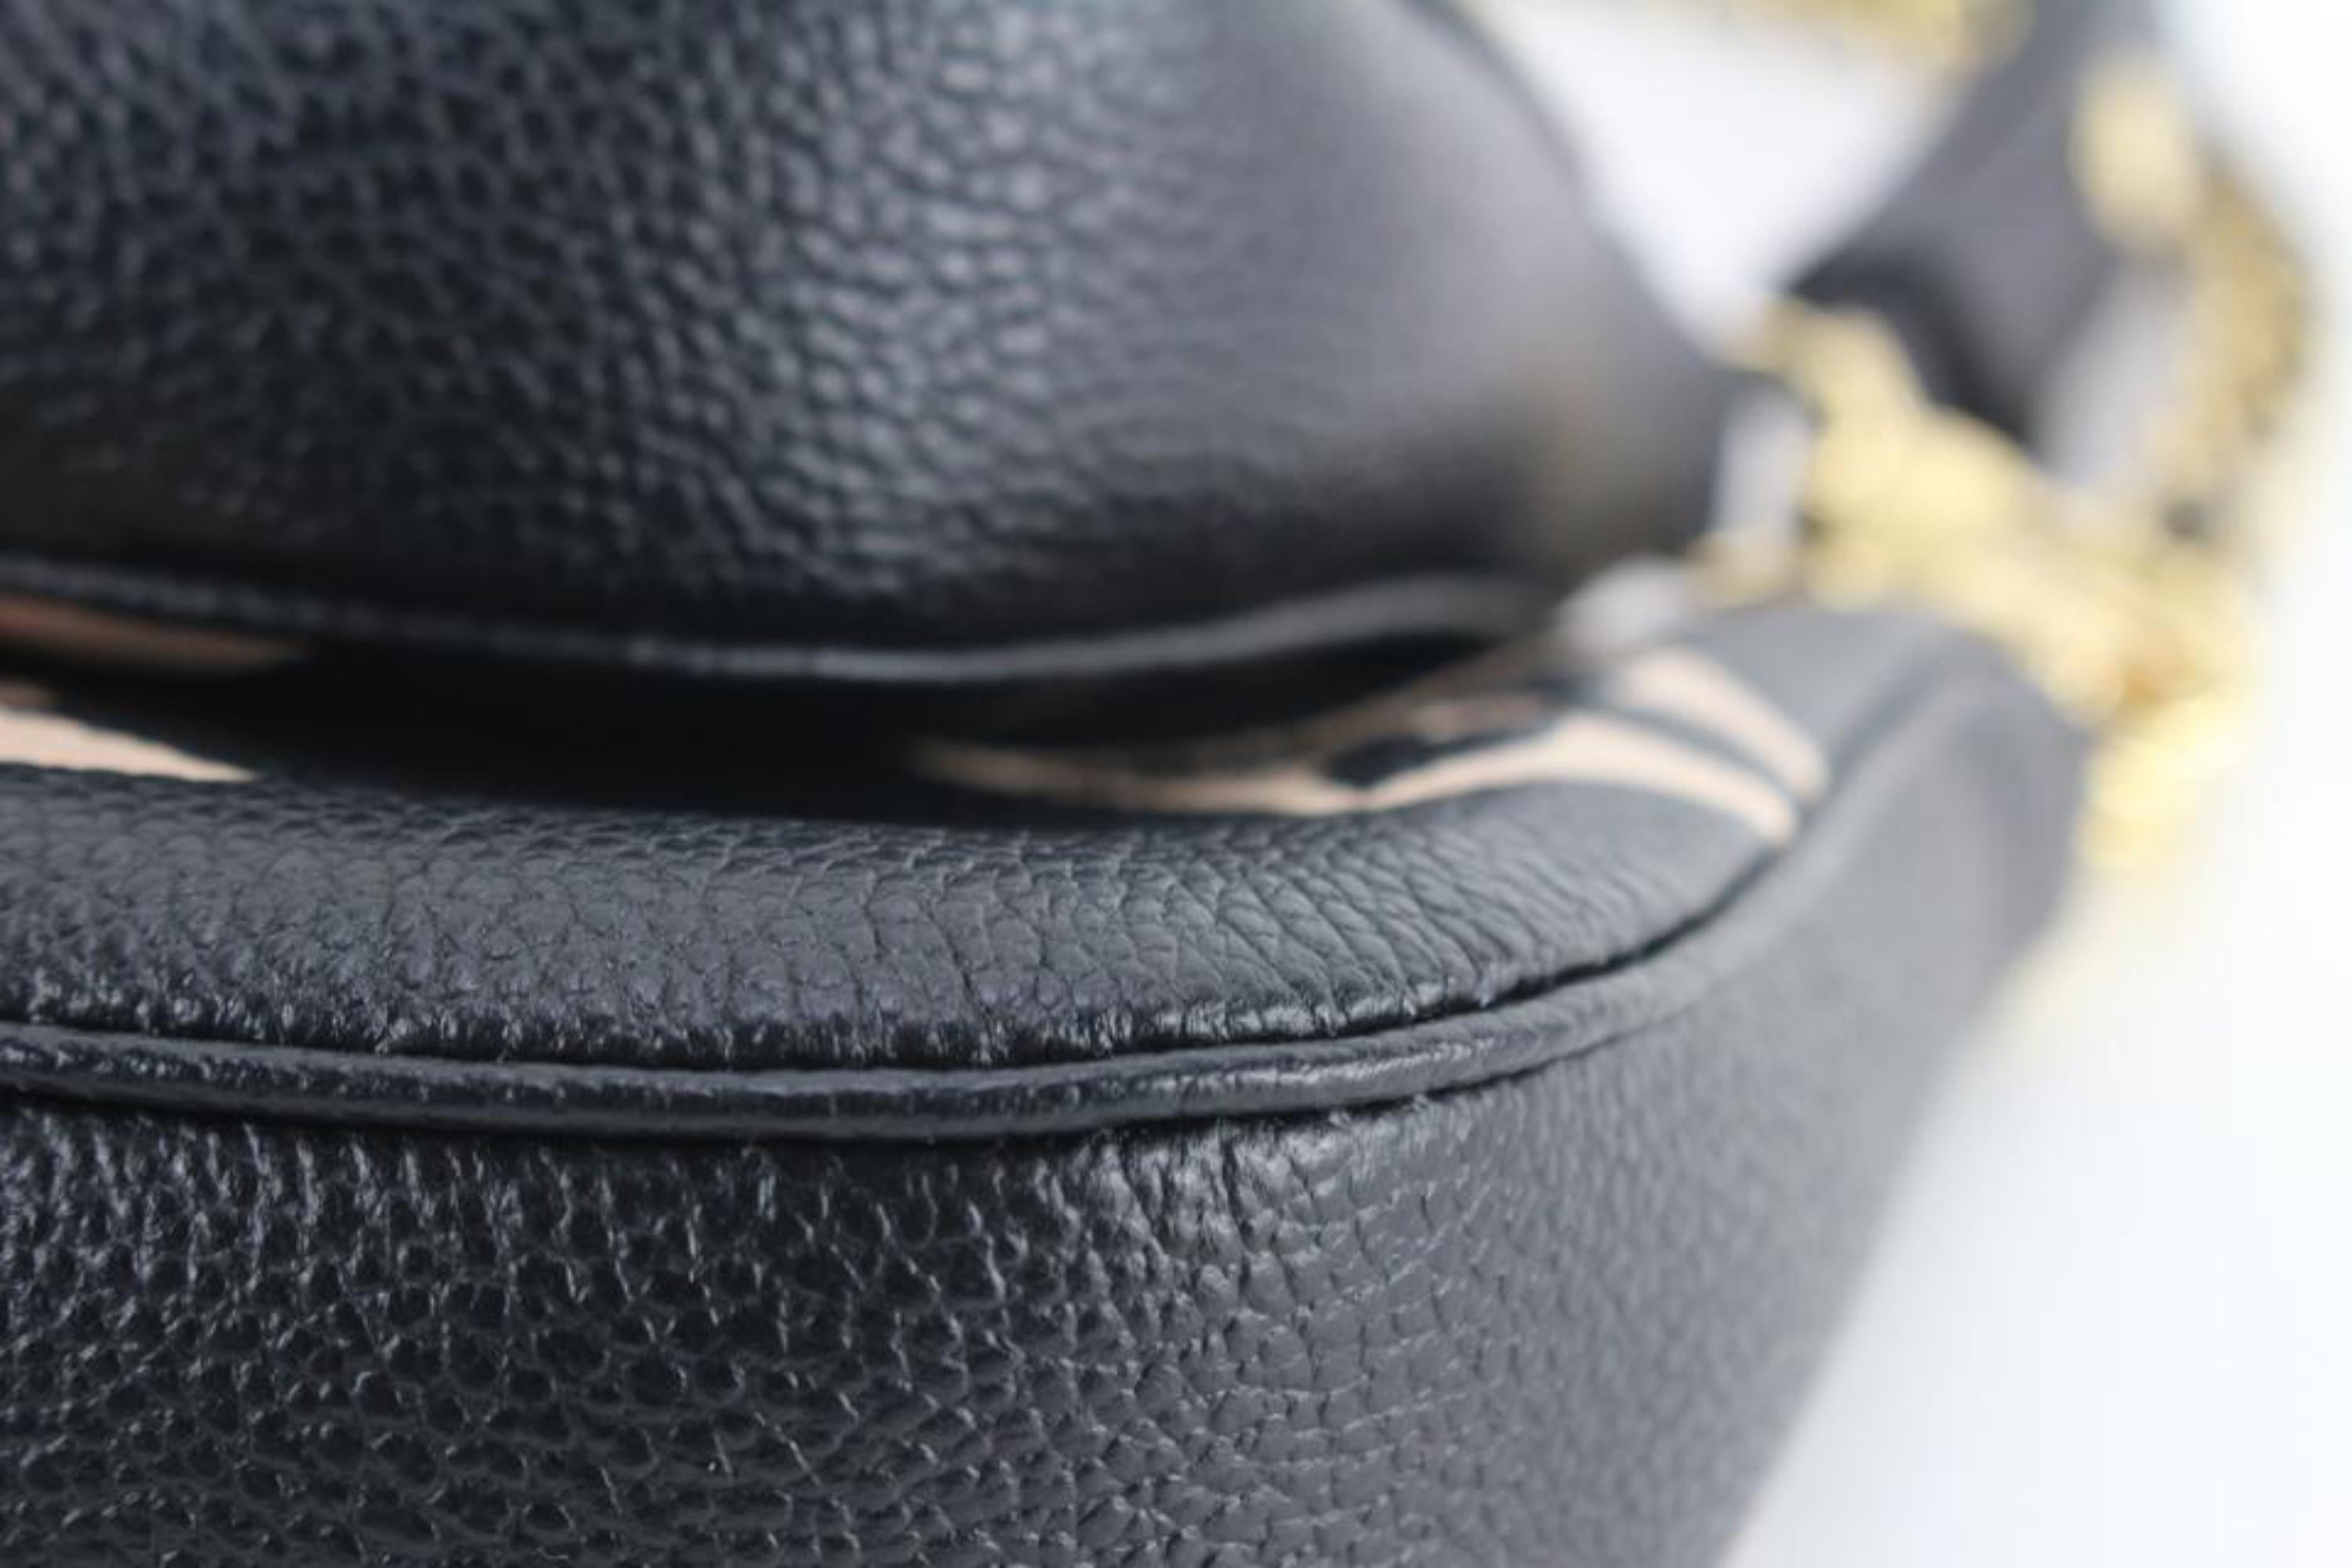 Louis Vuitton Multi Pochette Empreinte Leather Shoulder Bag